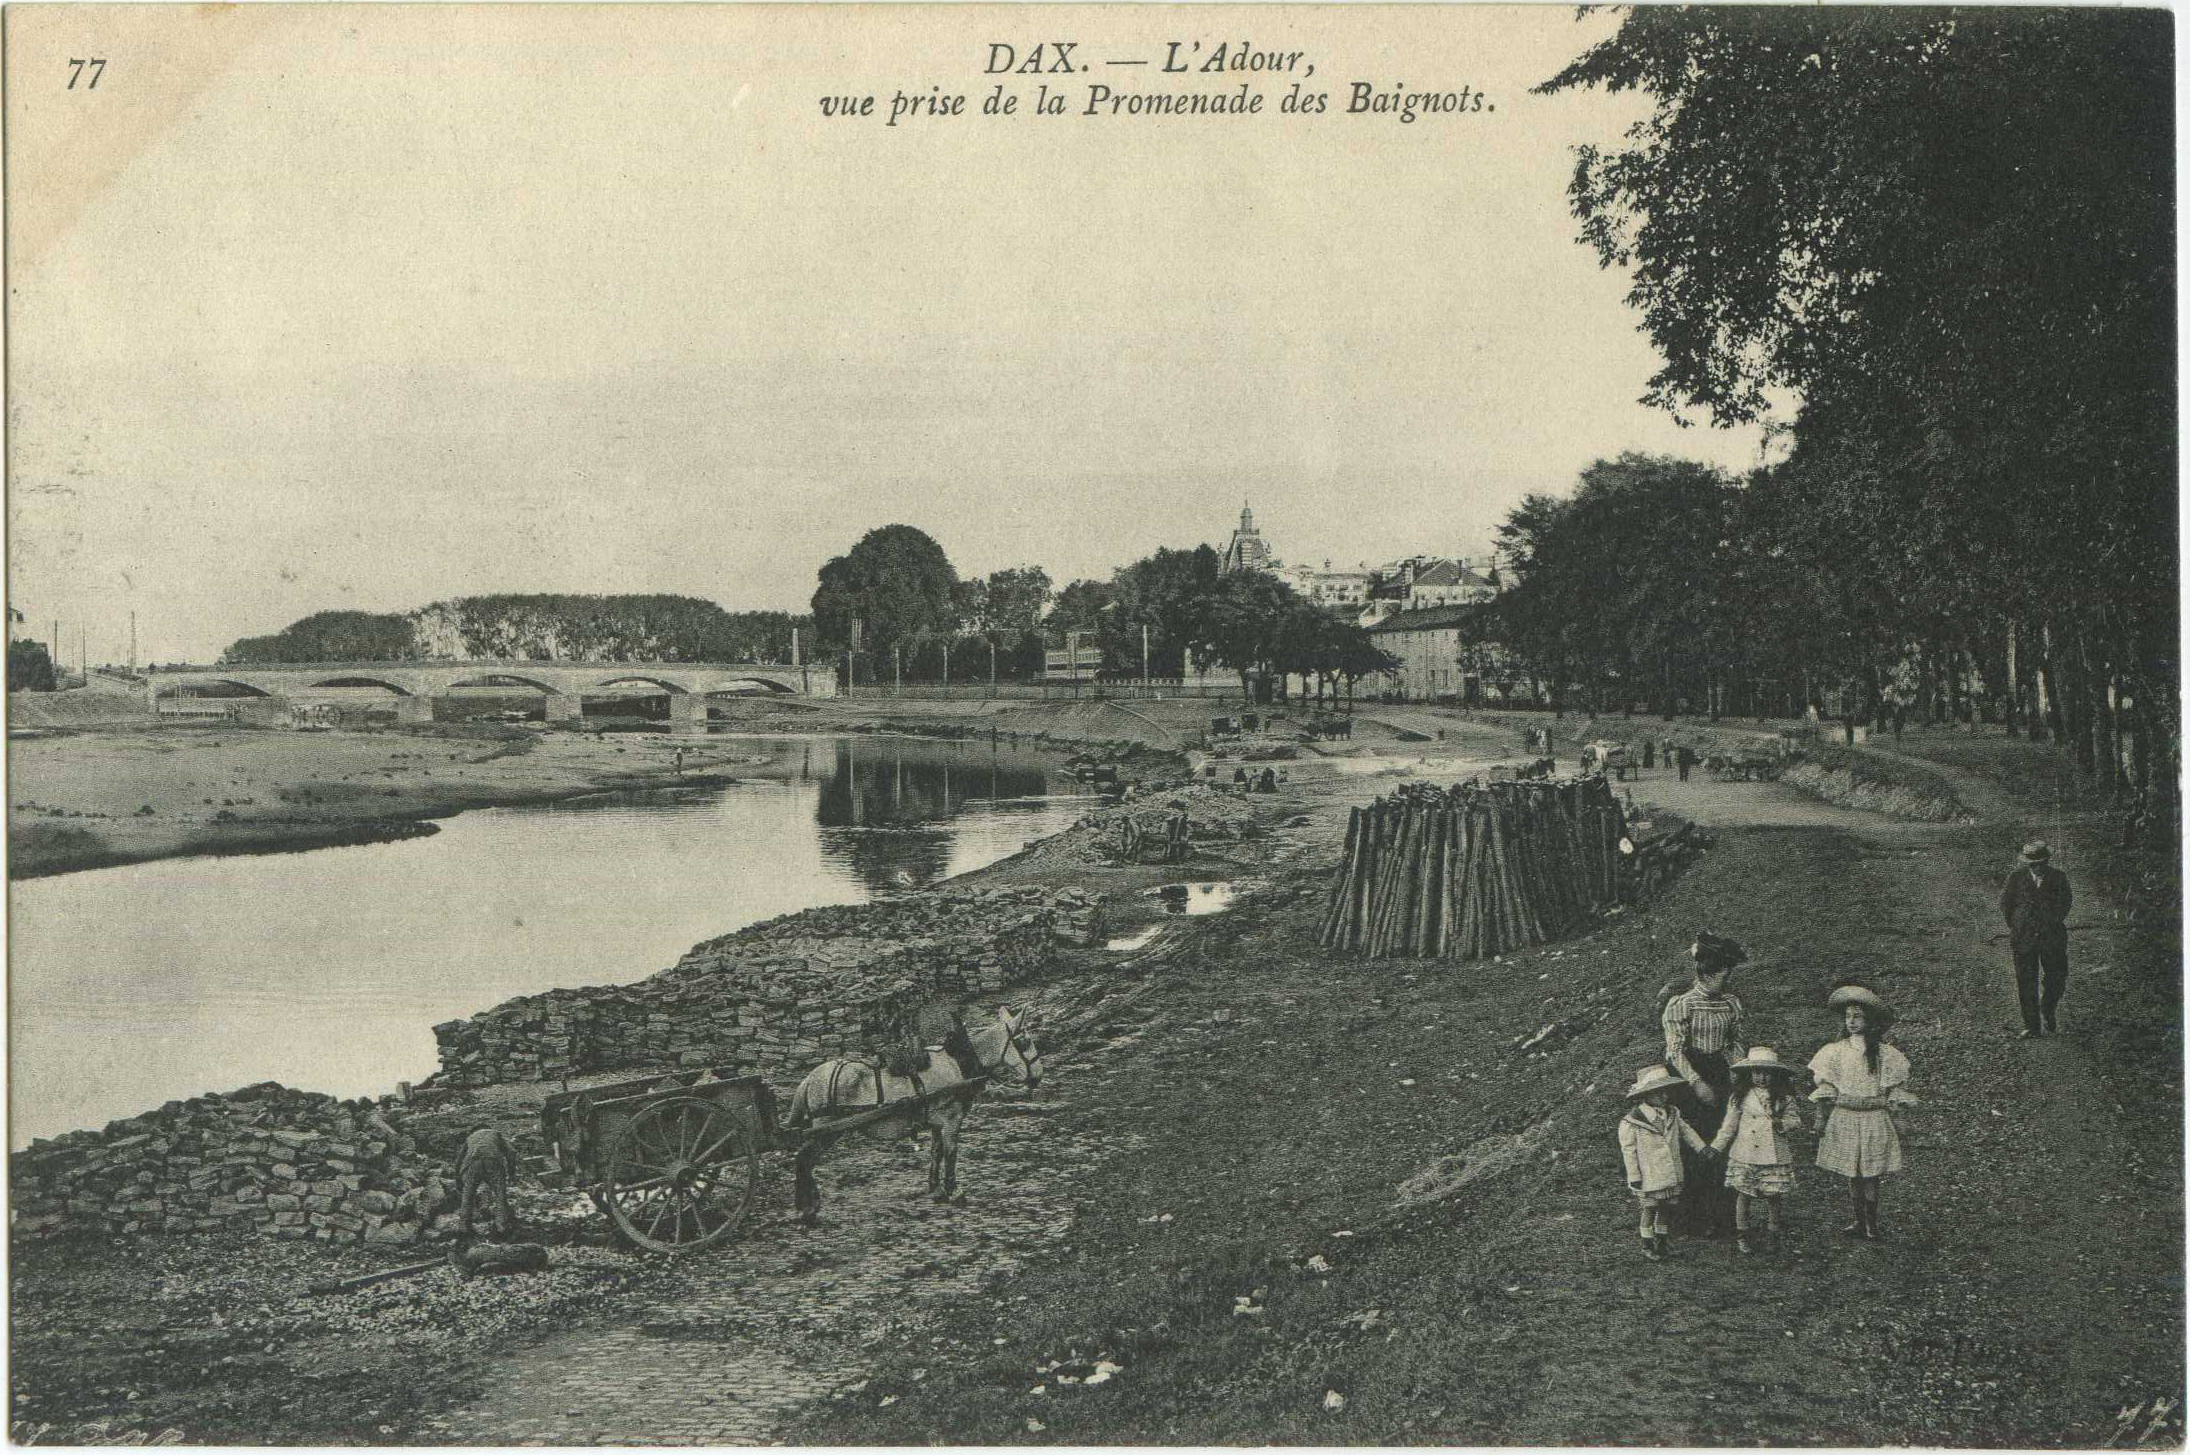 Dax - L'Adour, vue prise de la Promenade des Baignots.